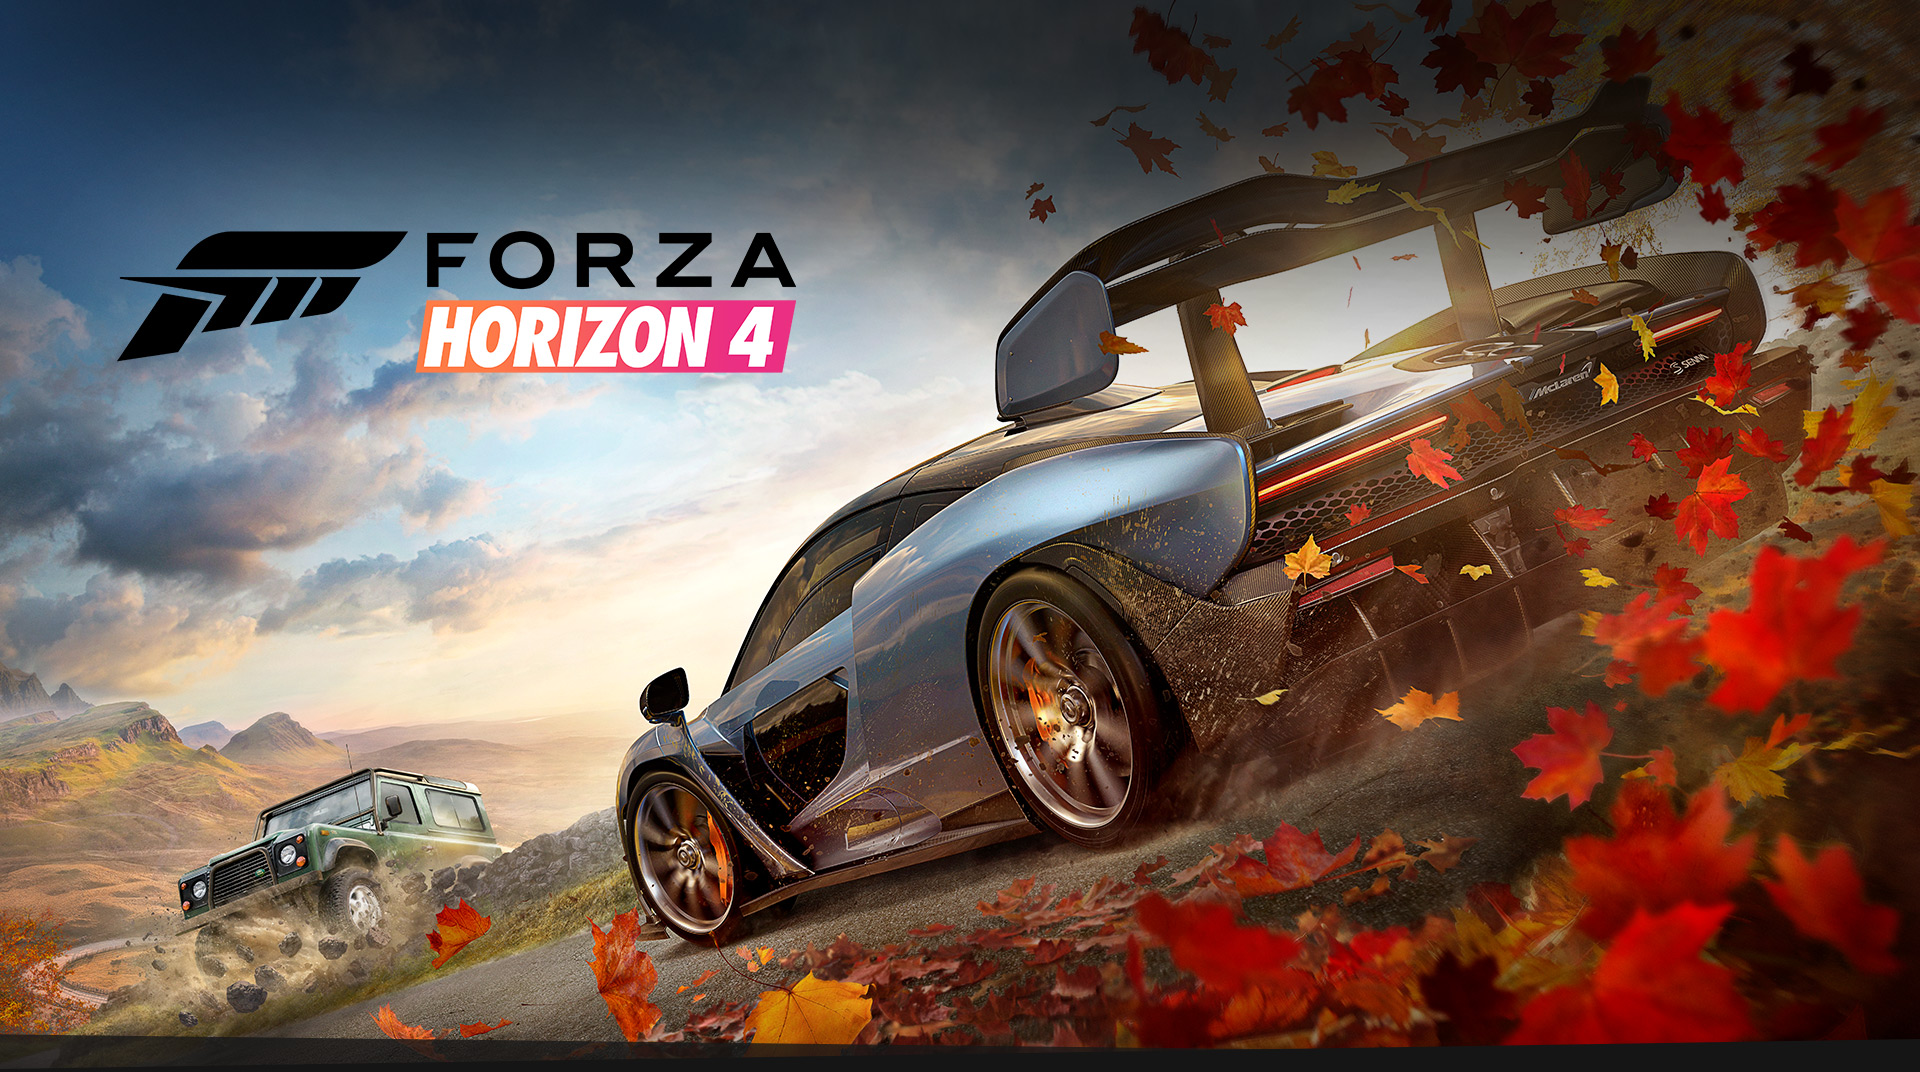 Forza Horizon 4, Exclusively for Xbox One and Windows 10 | Xbox - Forza Horizon 4 Xbox Live